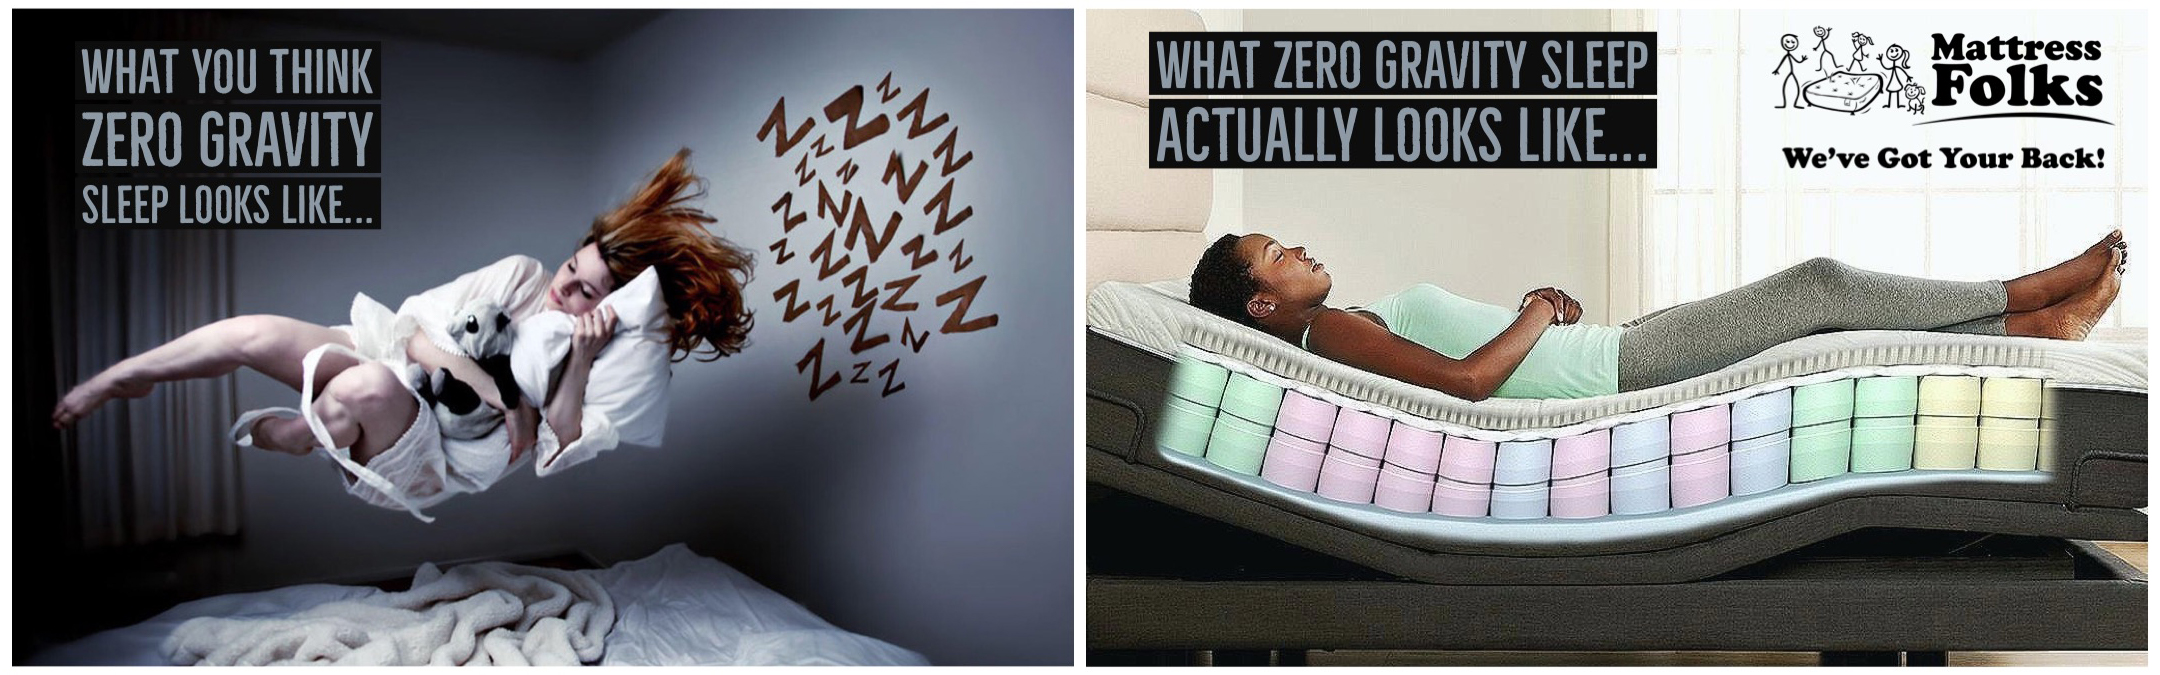 zero-gravity-mattress-folks-header